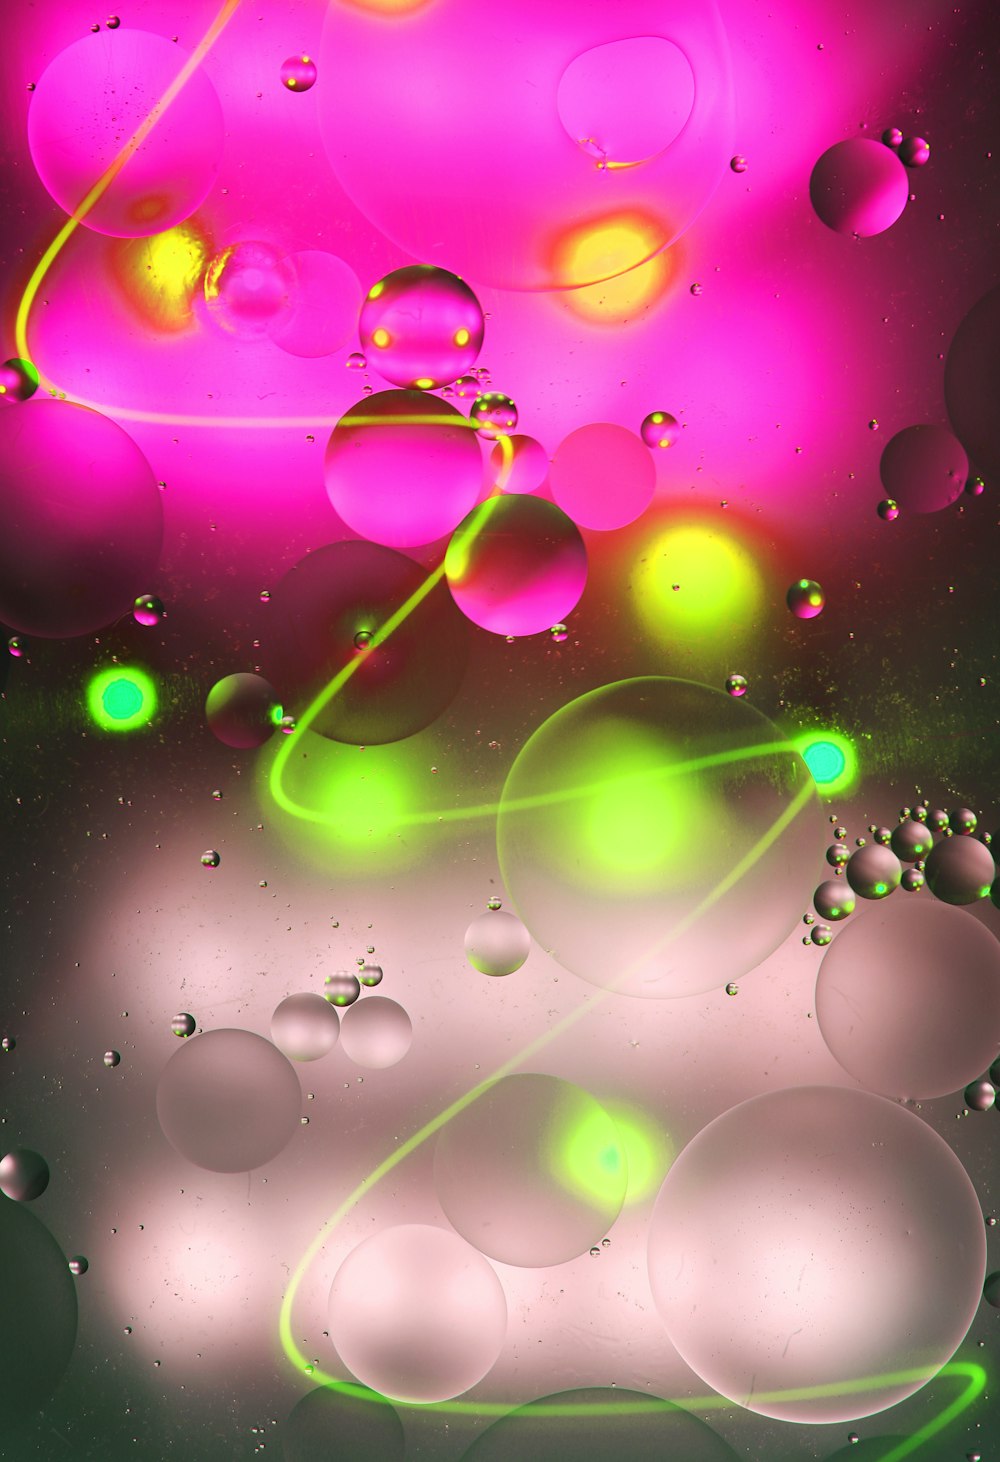 Ilustración de burbujas moradas y verdes